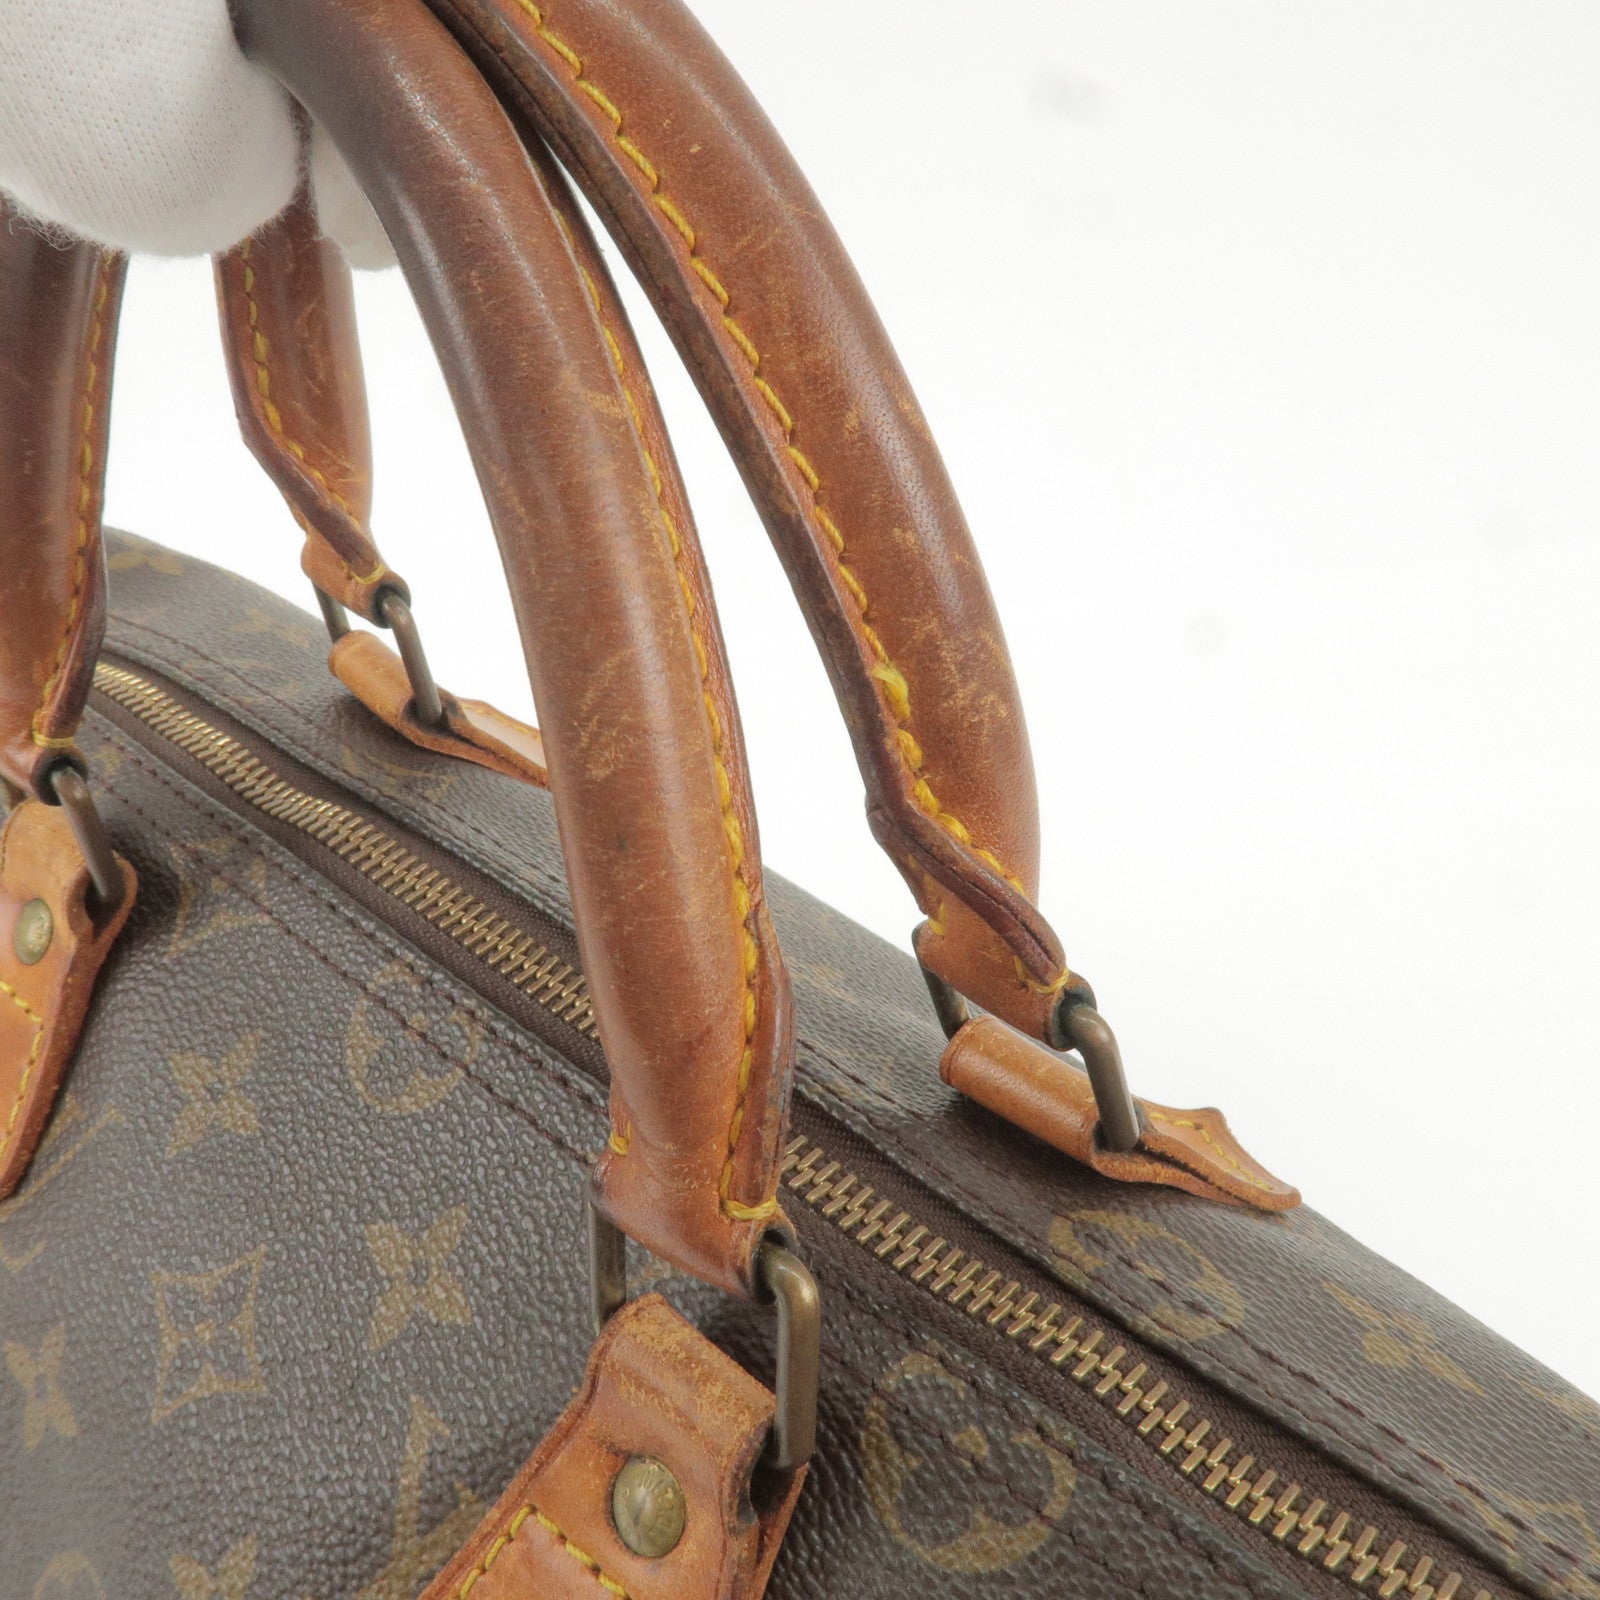 Louis Vuitton Monogram Speedy 30 Bag 1997 Vintage Handbag LV